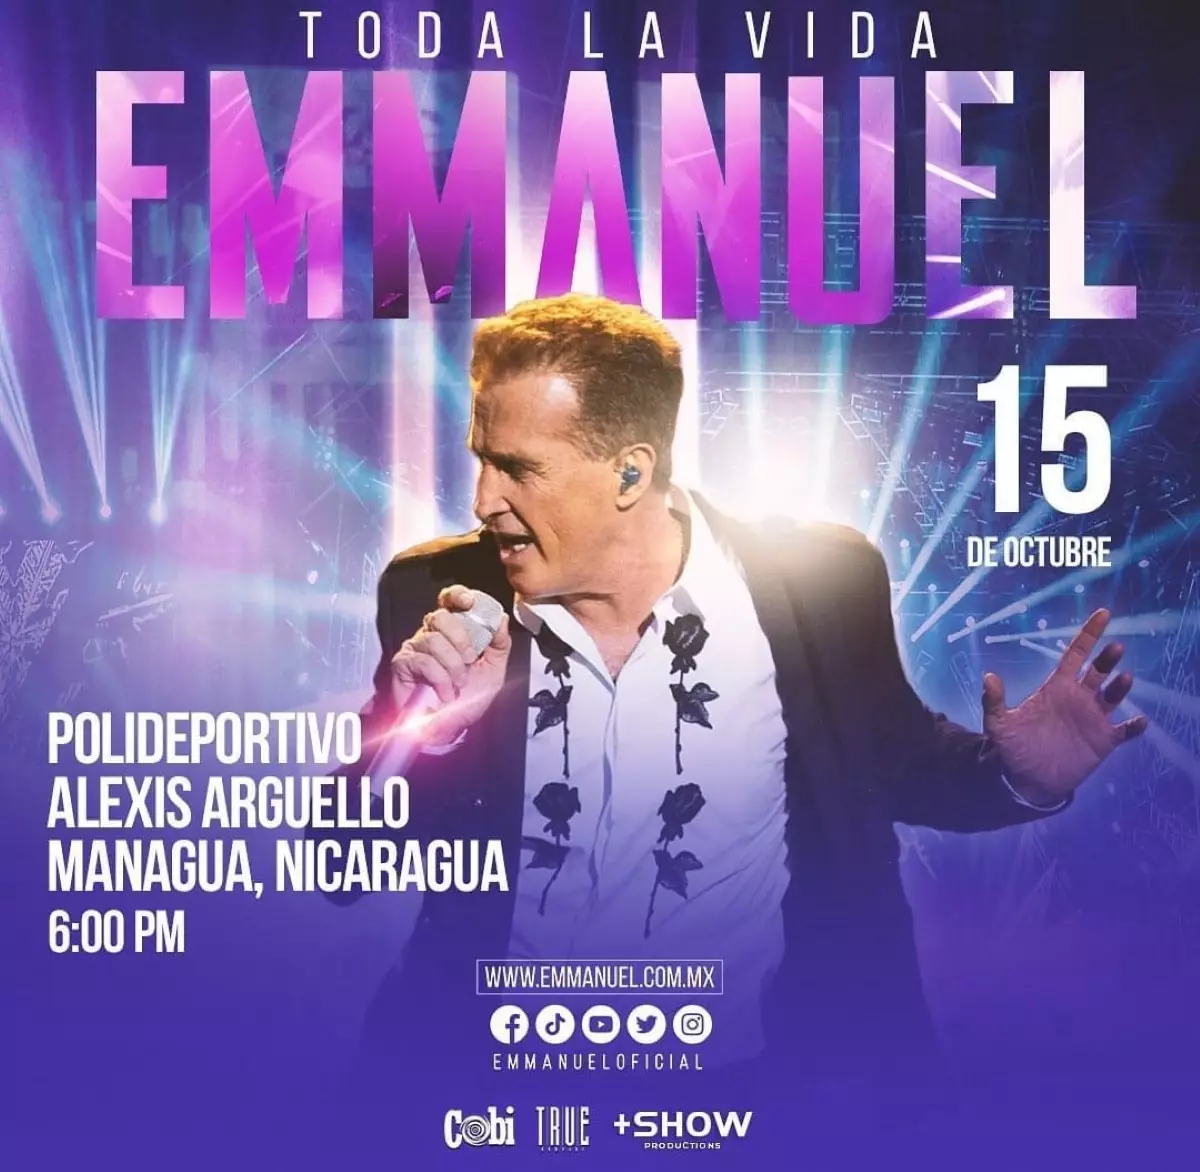 ¿Ya compraste los boletos para el concierto de Emmanuel en Nicaragua?